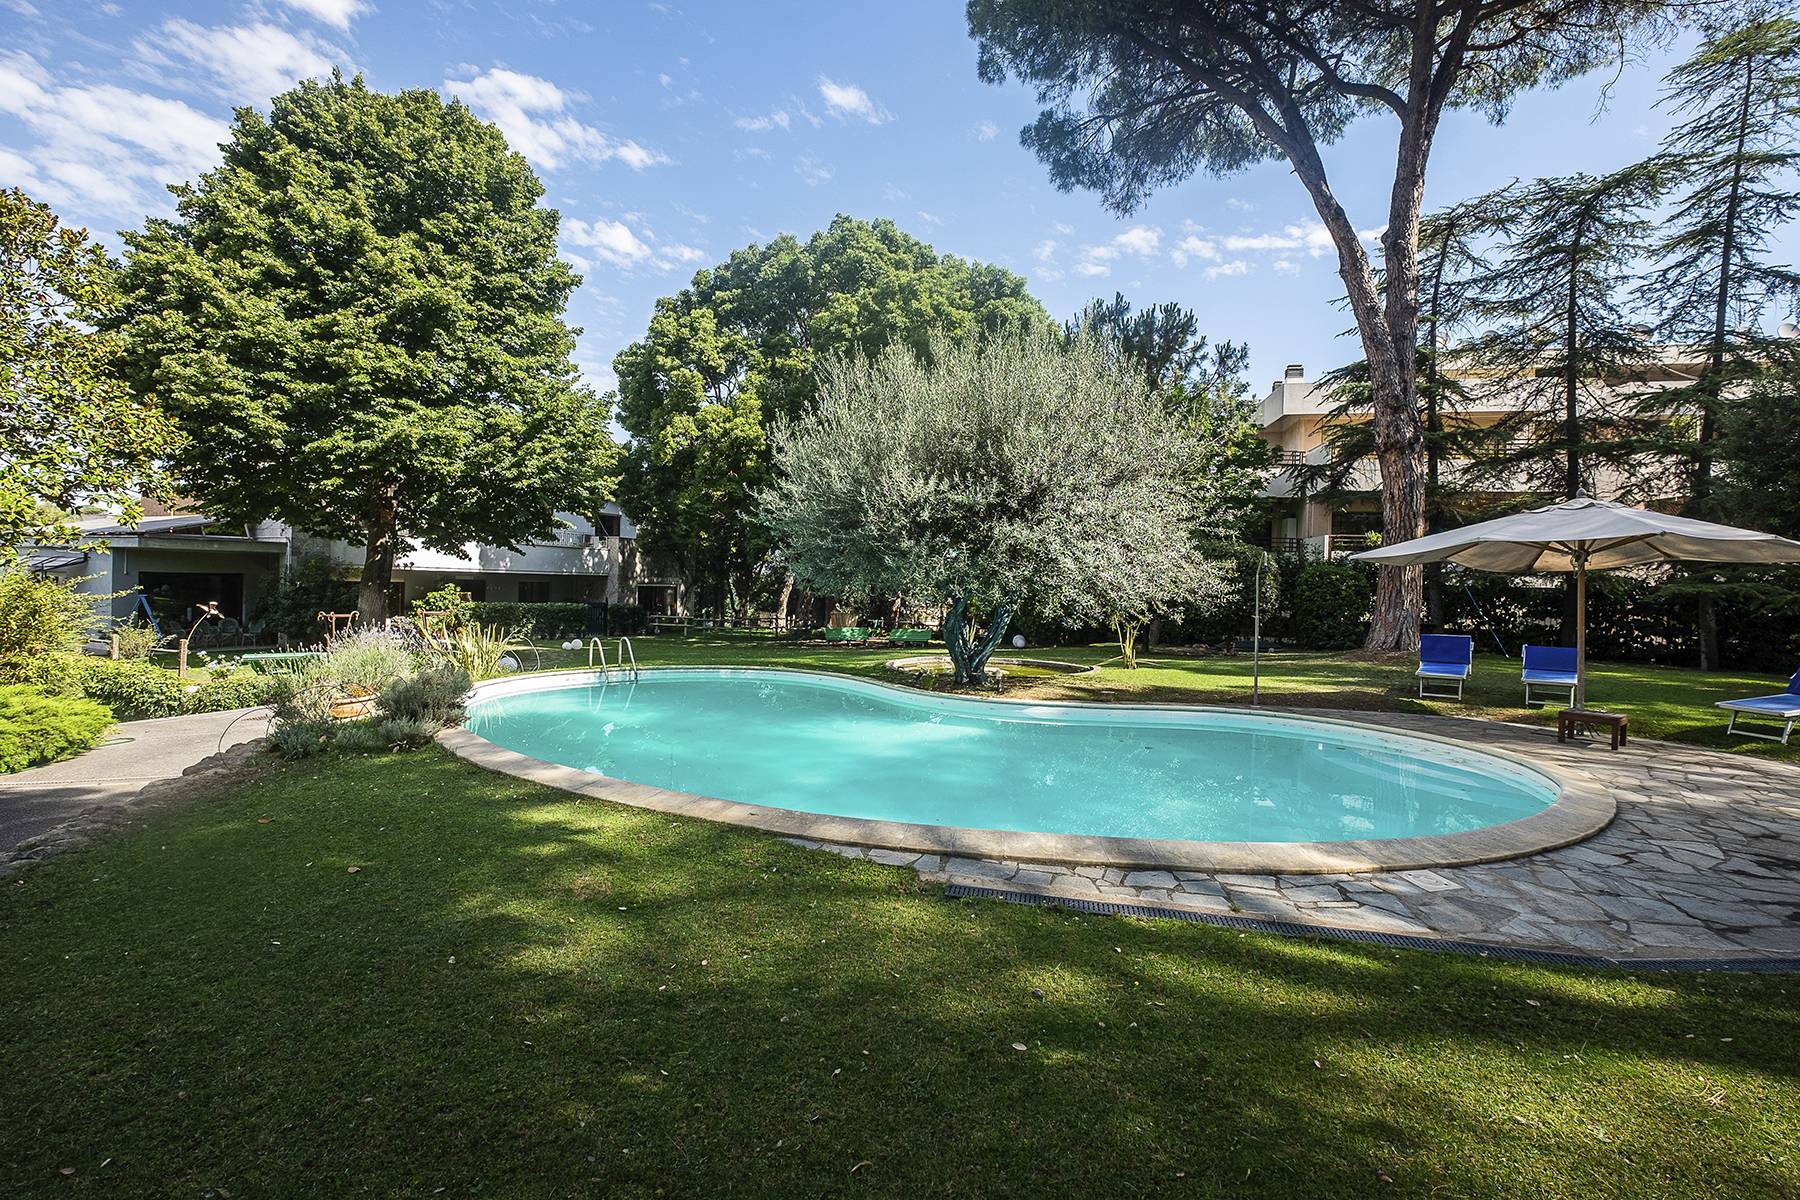 Villa in Vendita a Roma: 5 locali, 900 mq - Foto 3